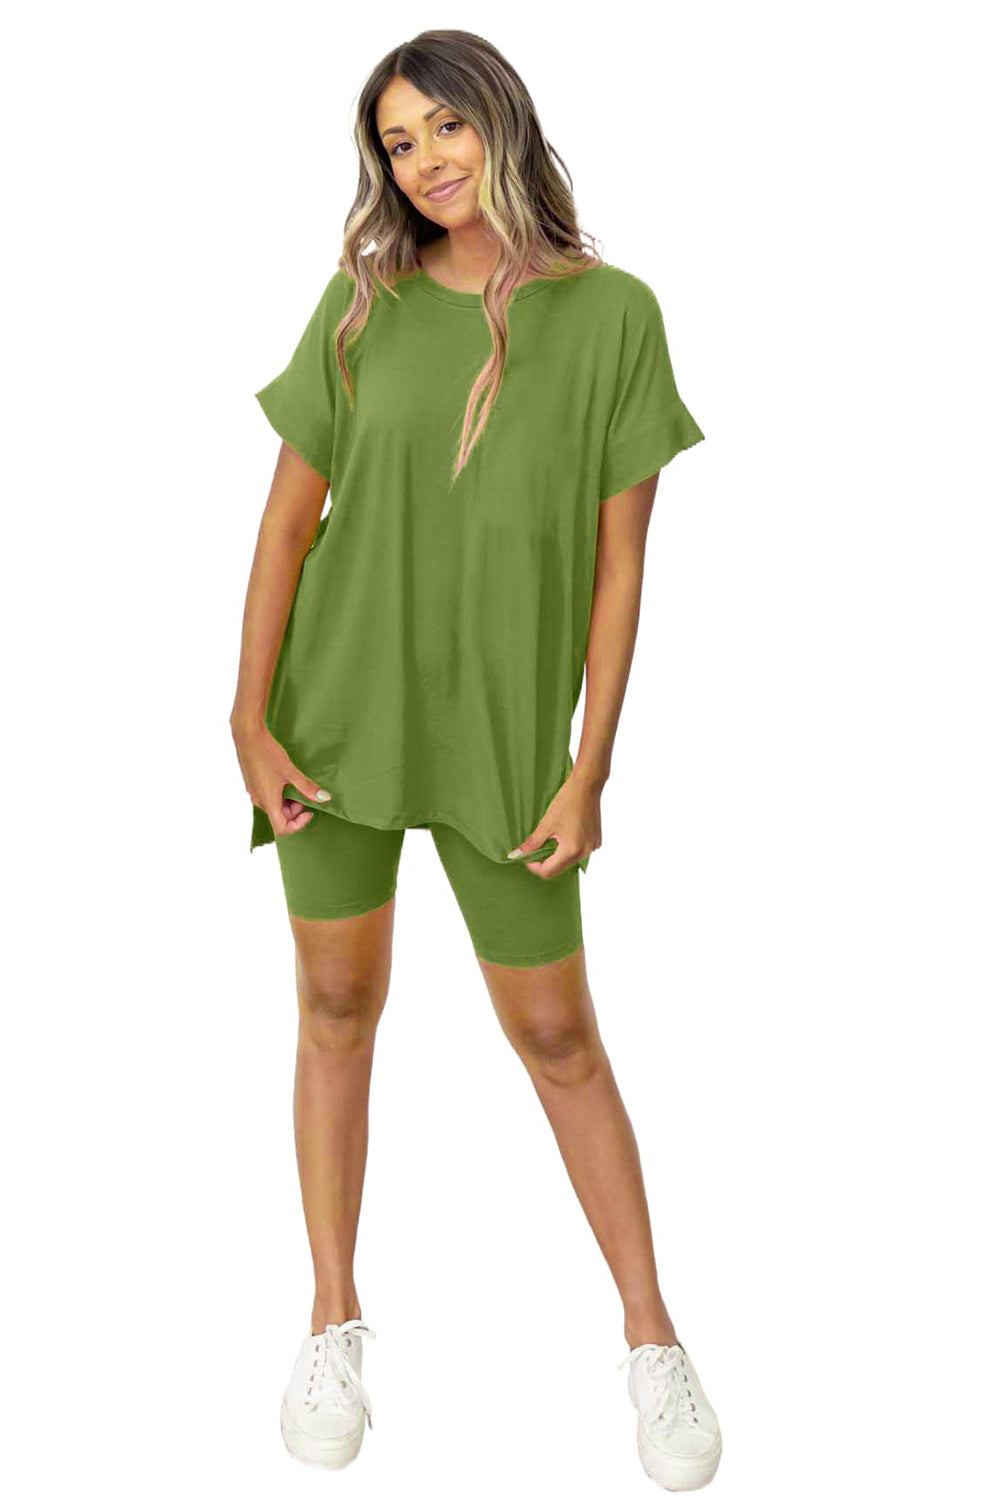 Spinatgrünes Set aus einfarbigem Tunika-T-Shirt mit geteiltem Saum und engen Shorts